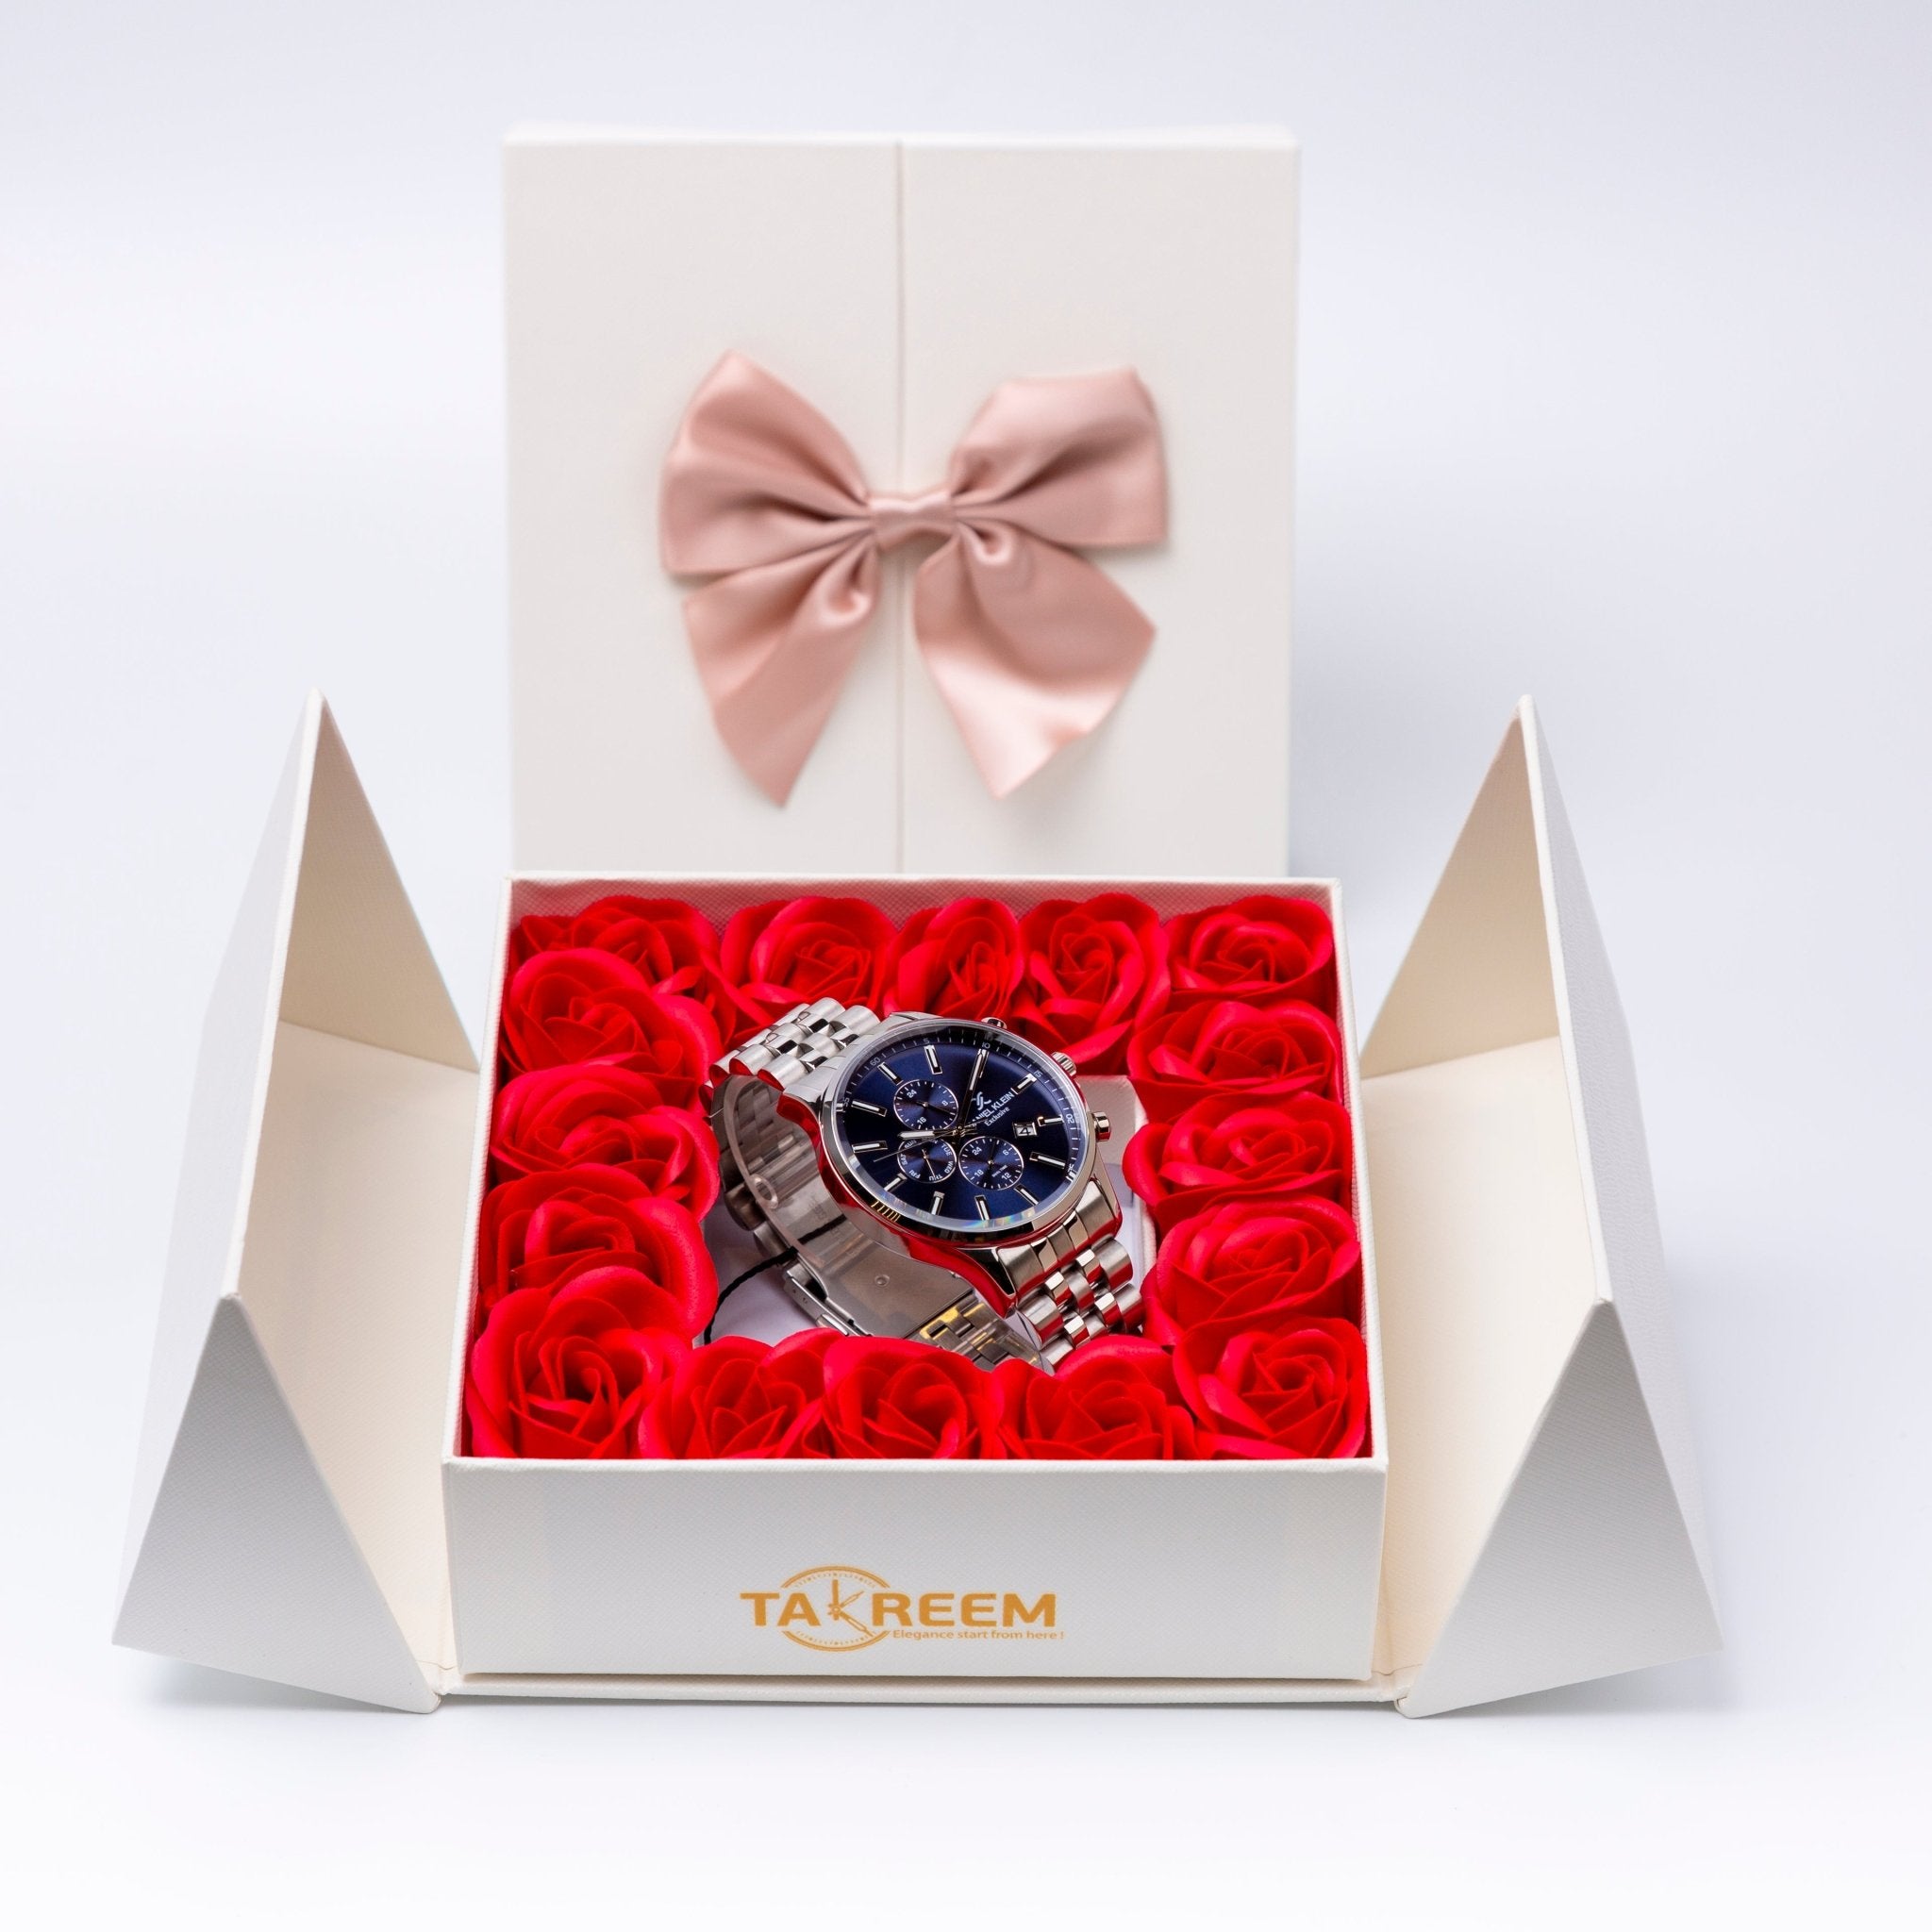 Flower Box - Gift For Men 15 - #shoFlower Box - Gift For Men 15p_name#Flower Box - Gift For Men 15Gift Boxes & TinsTakreemTakreem.joMenWatchFlower Box - Gift For Men 15 - Takreem.jo